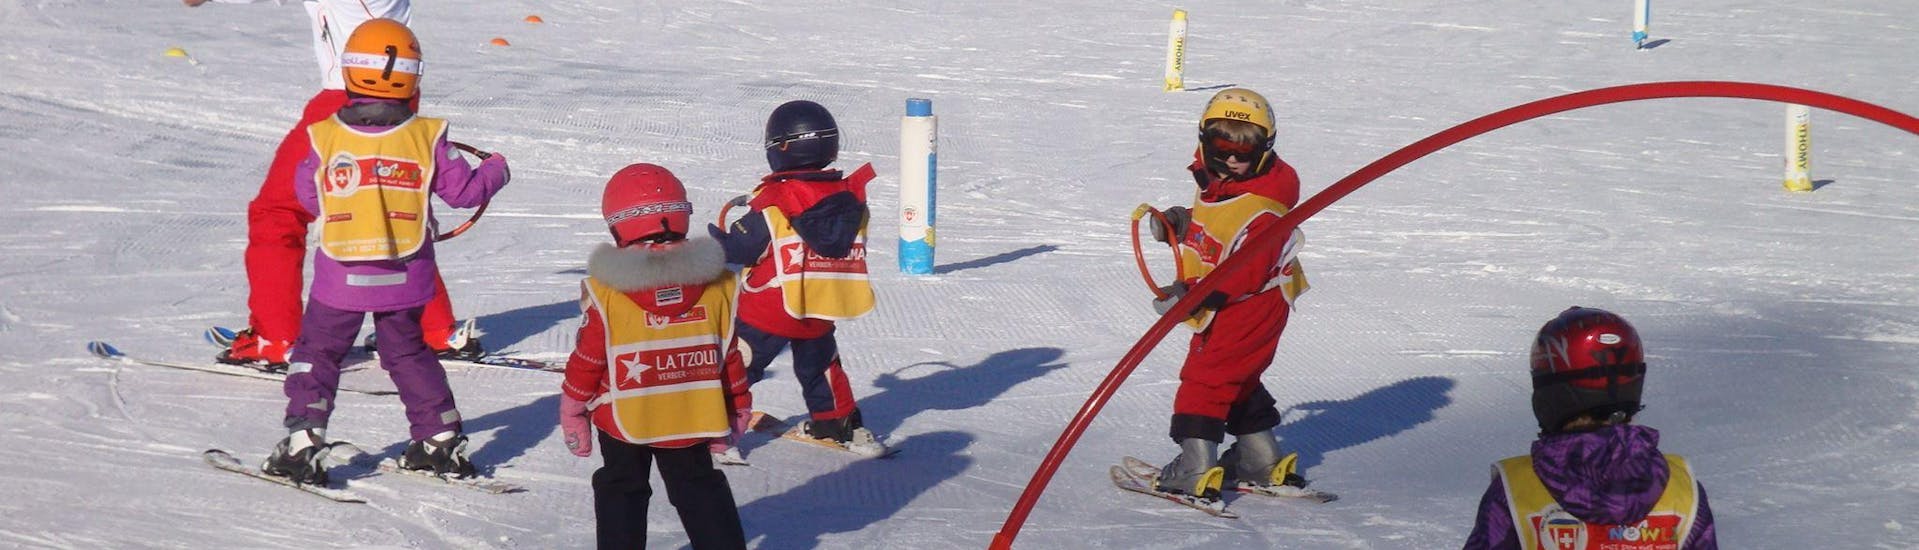 Des enfants apprennent les bases du ski avec des jeunes en toute sécurité dans le jardin d'enfants pendant leur Cours de ski Enfants "Jardin des neiges" (3-6 ans) - Matin avec l'école de ski suisse La Tzoumaz.